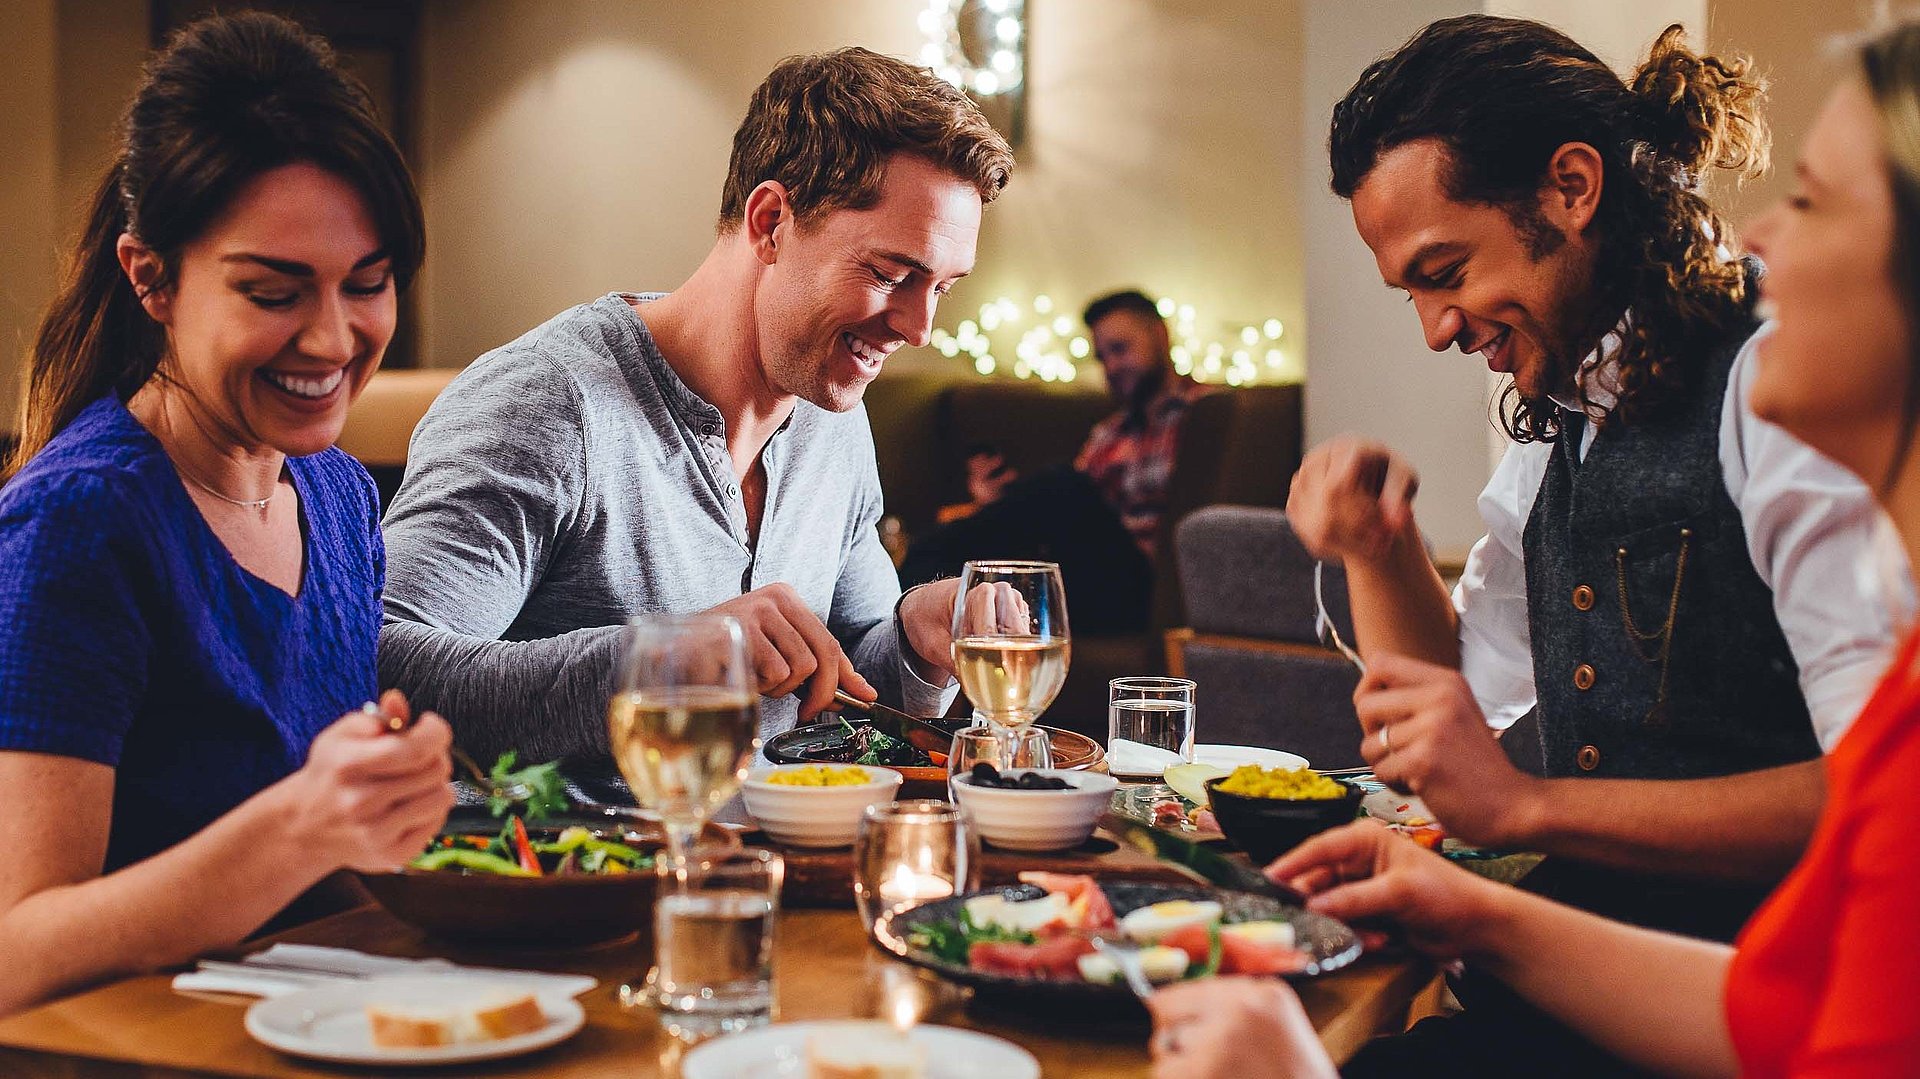 Gastronomie für Gruppen in Franken - eine Gruppe von Gästen lacht zusammen an einem bedeckten Tisch